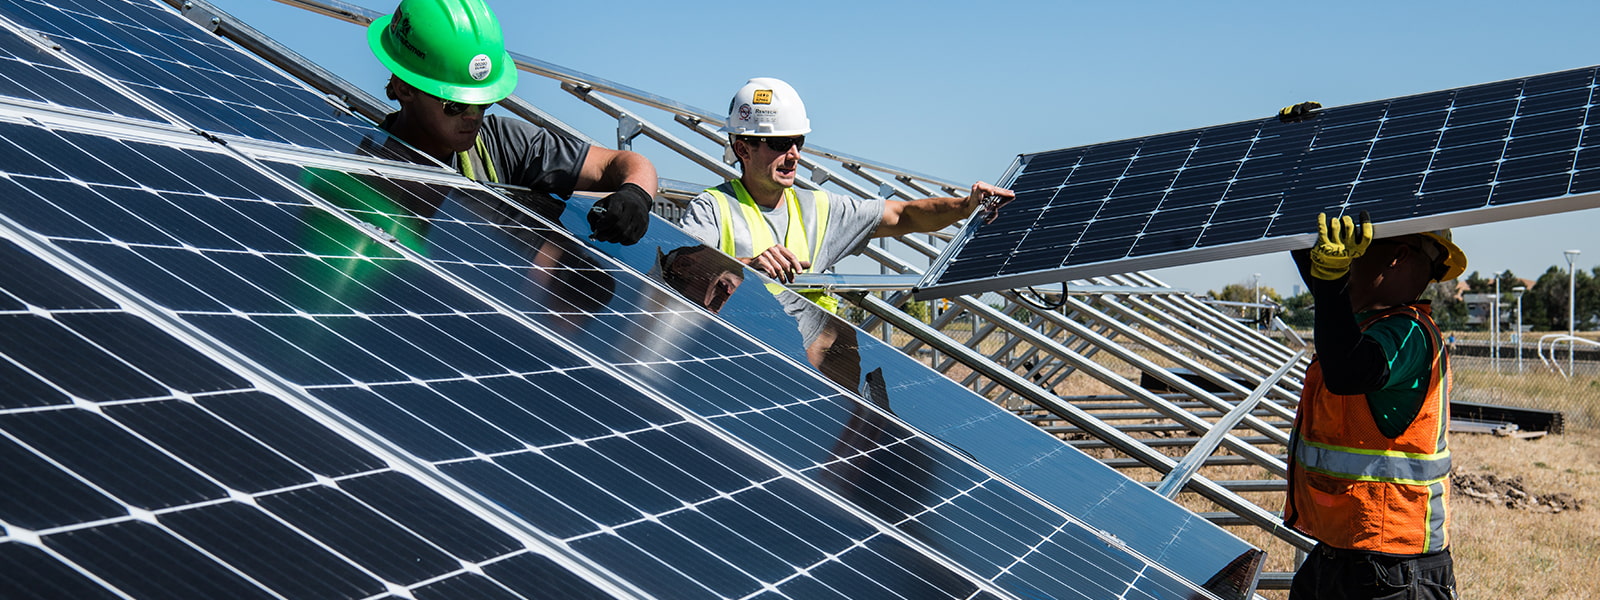 Sonnige Aussichten: Photovoltaik schafft neue Arbeitsplätze- Image